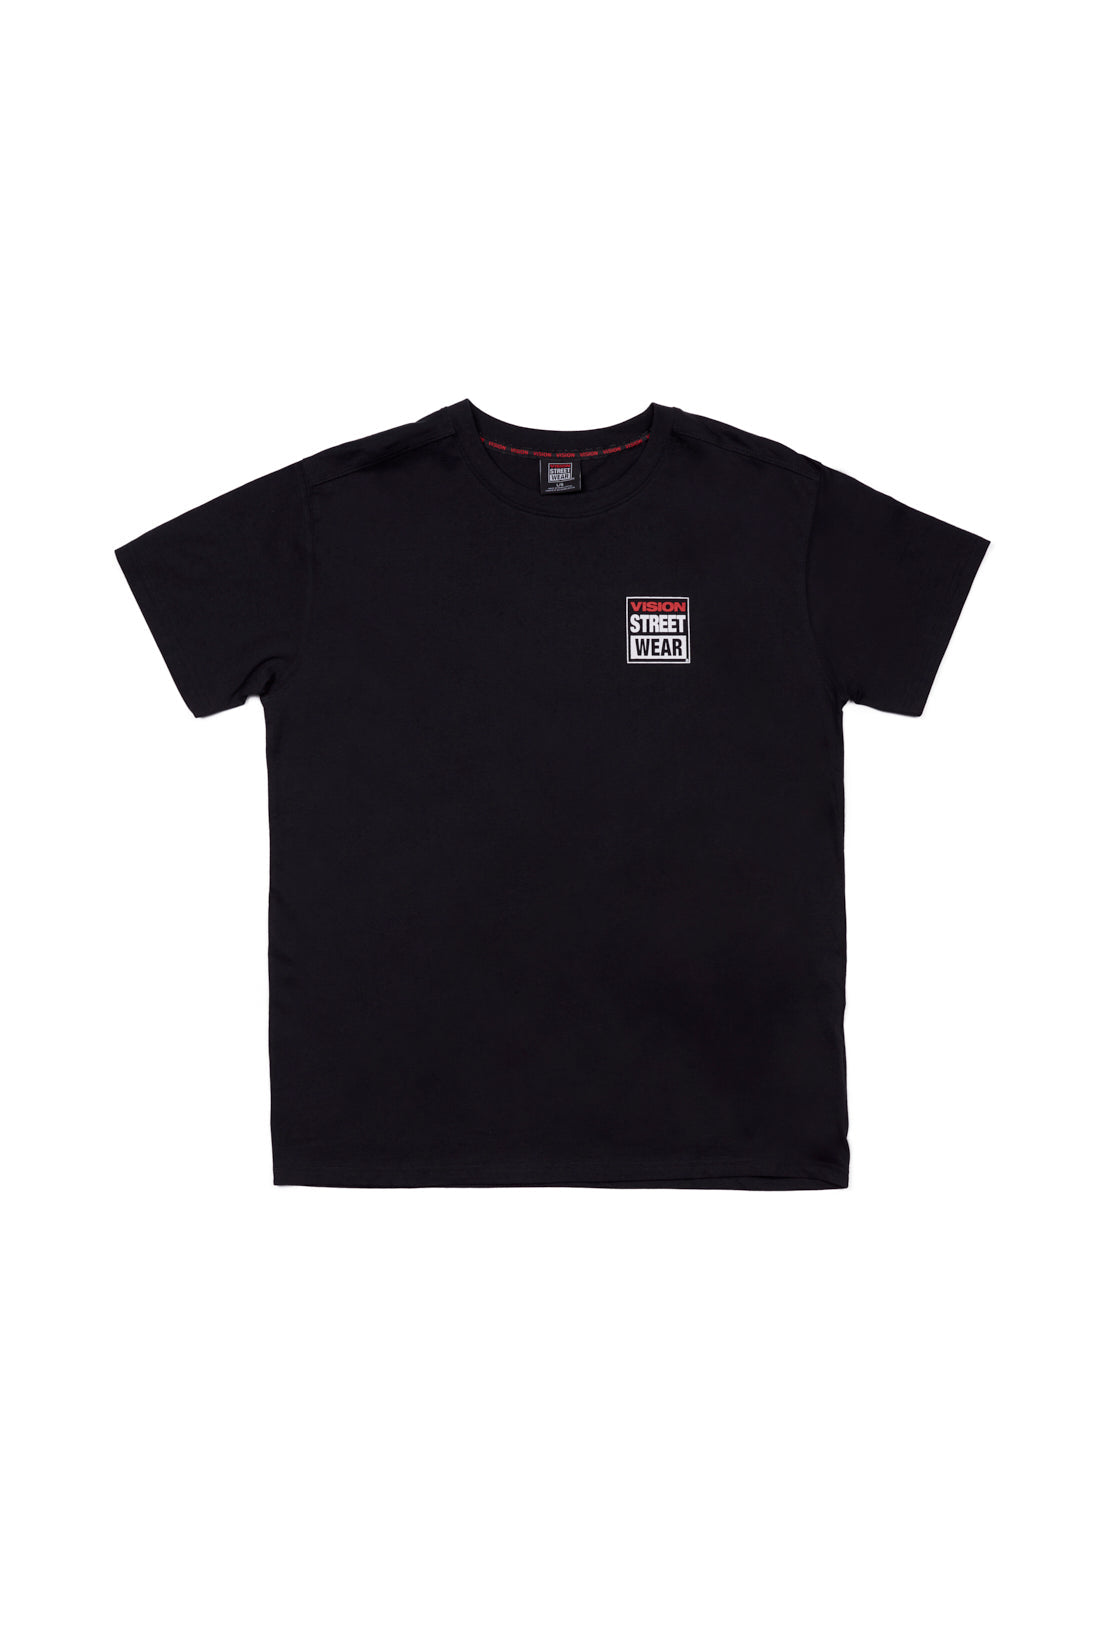 Safety Pin Logo T-Shirt - Black - DENIM SOCIETY™